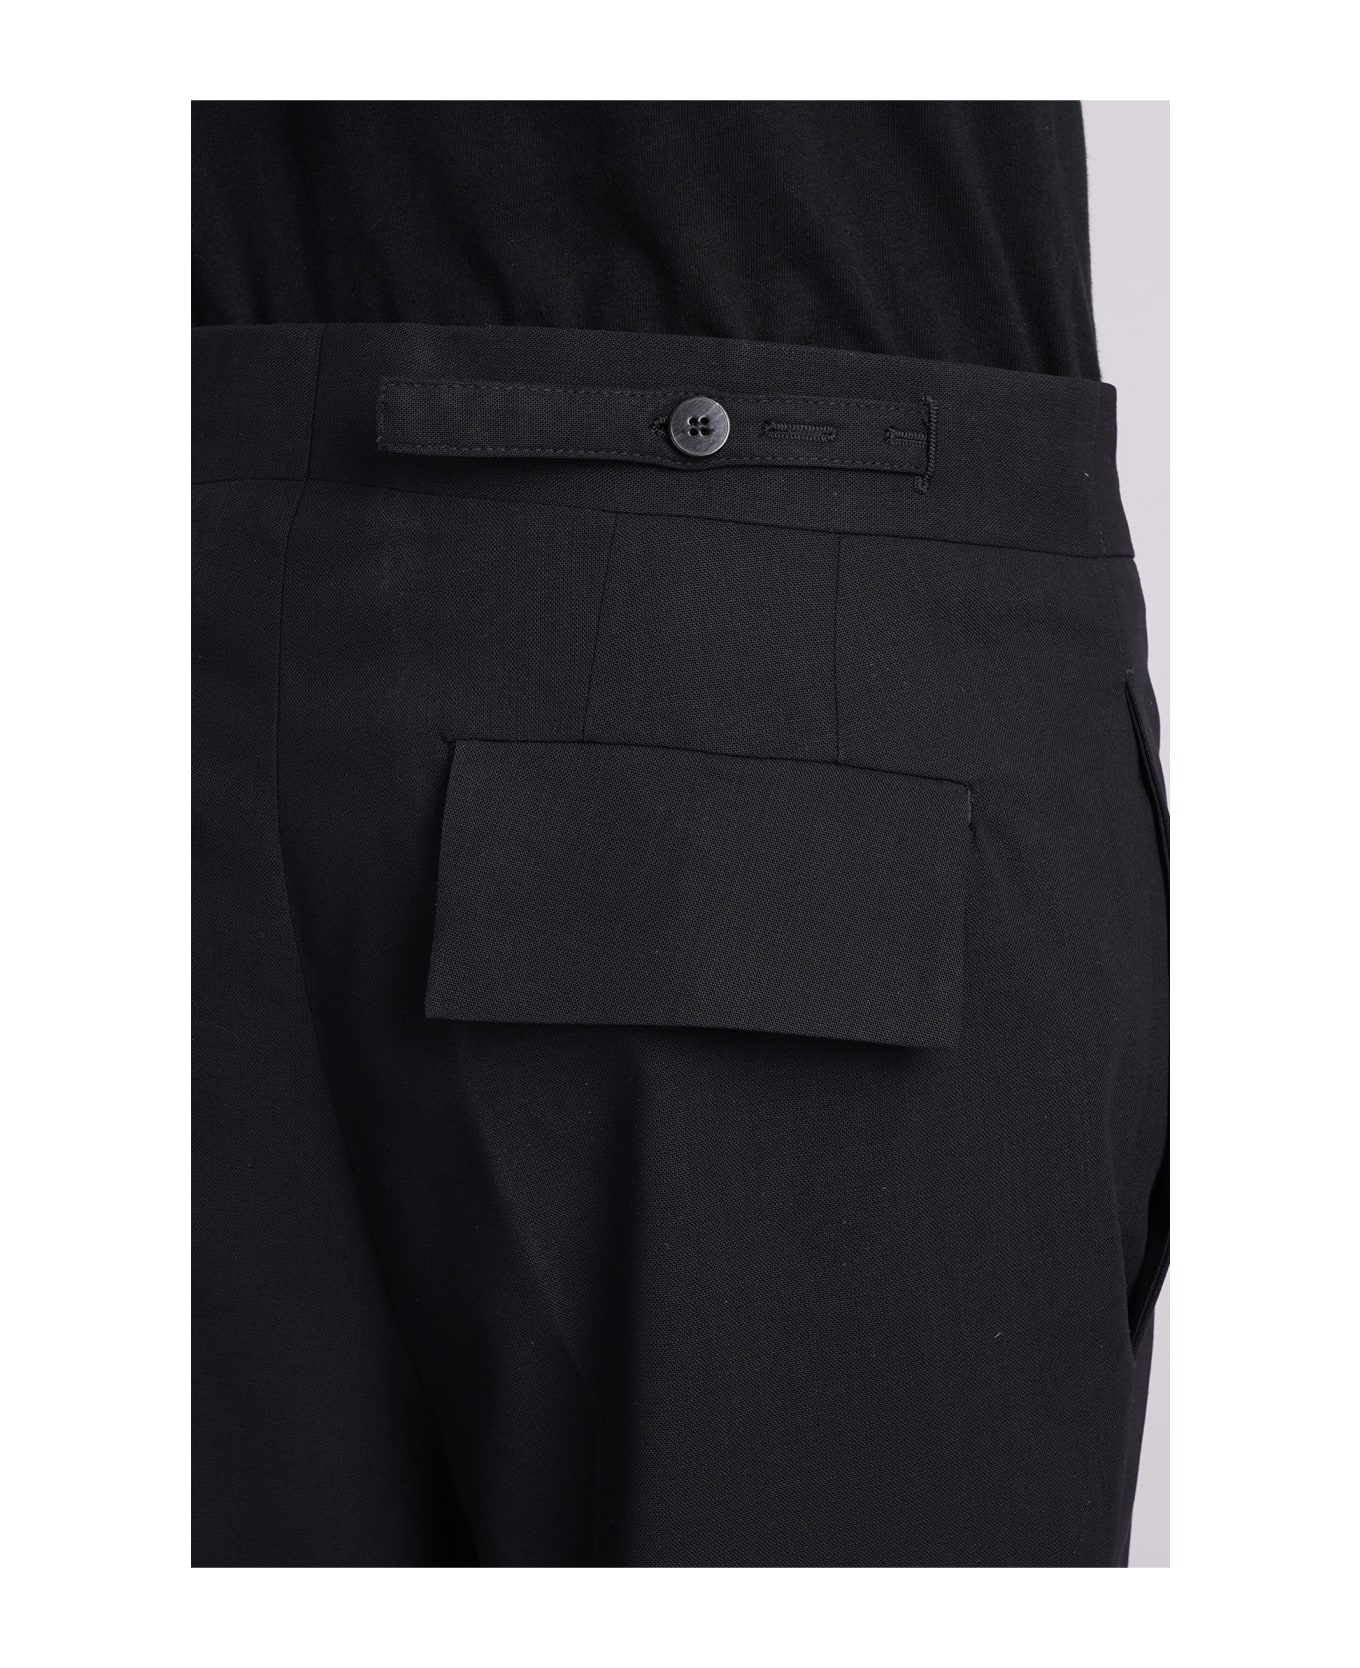 Sapio N7 Pants In Black Wool - black ボトムス